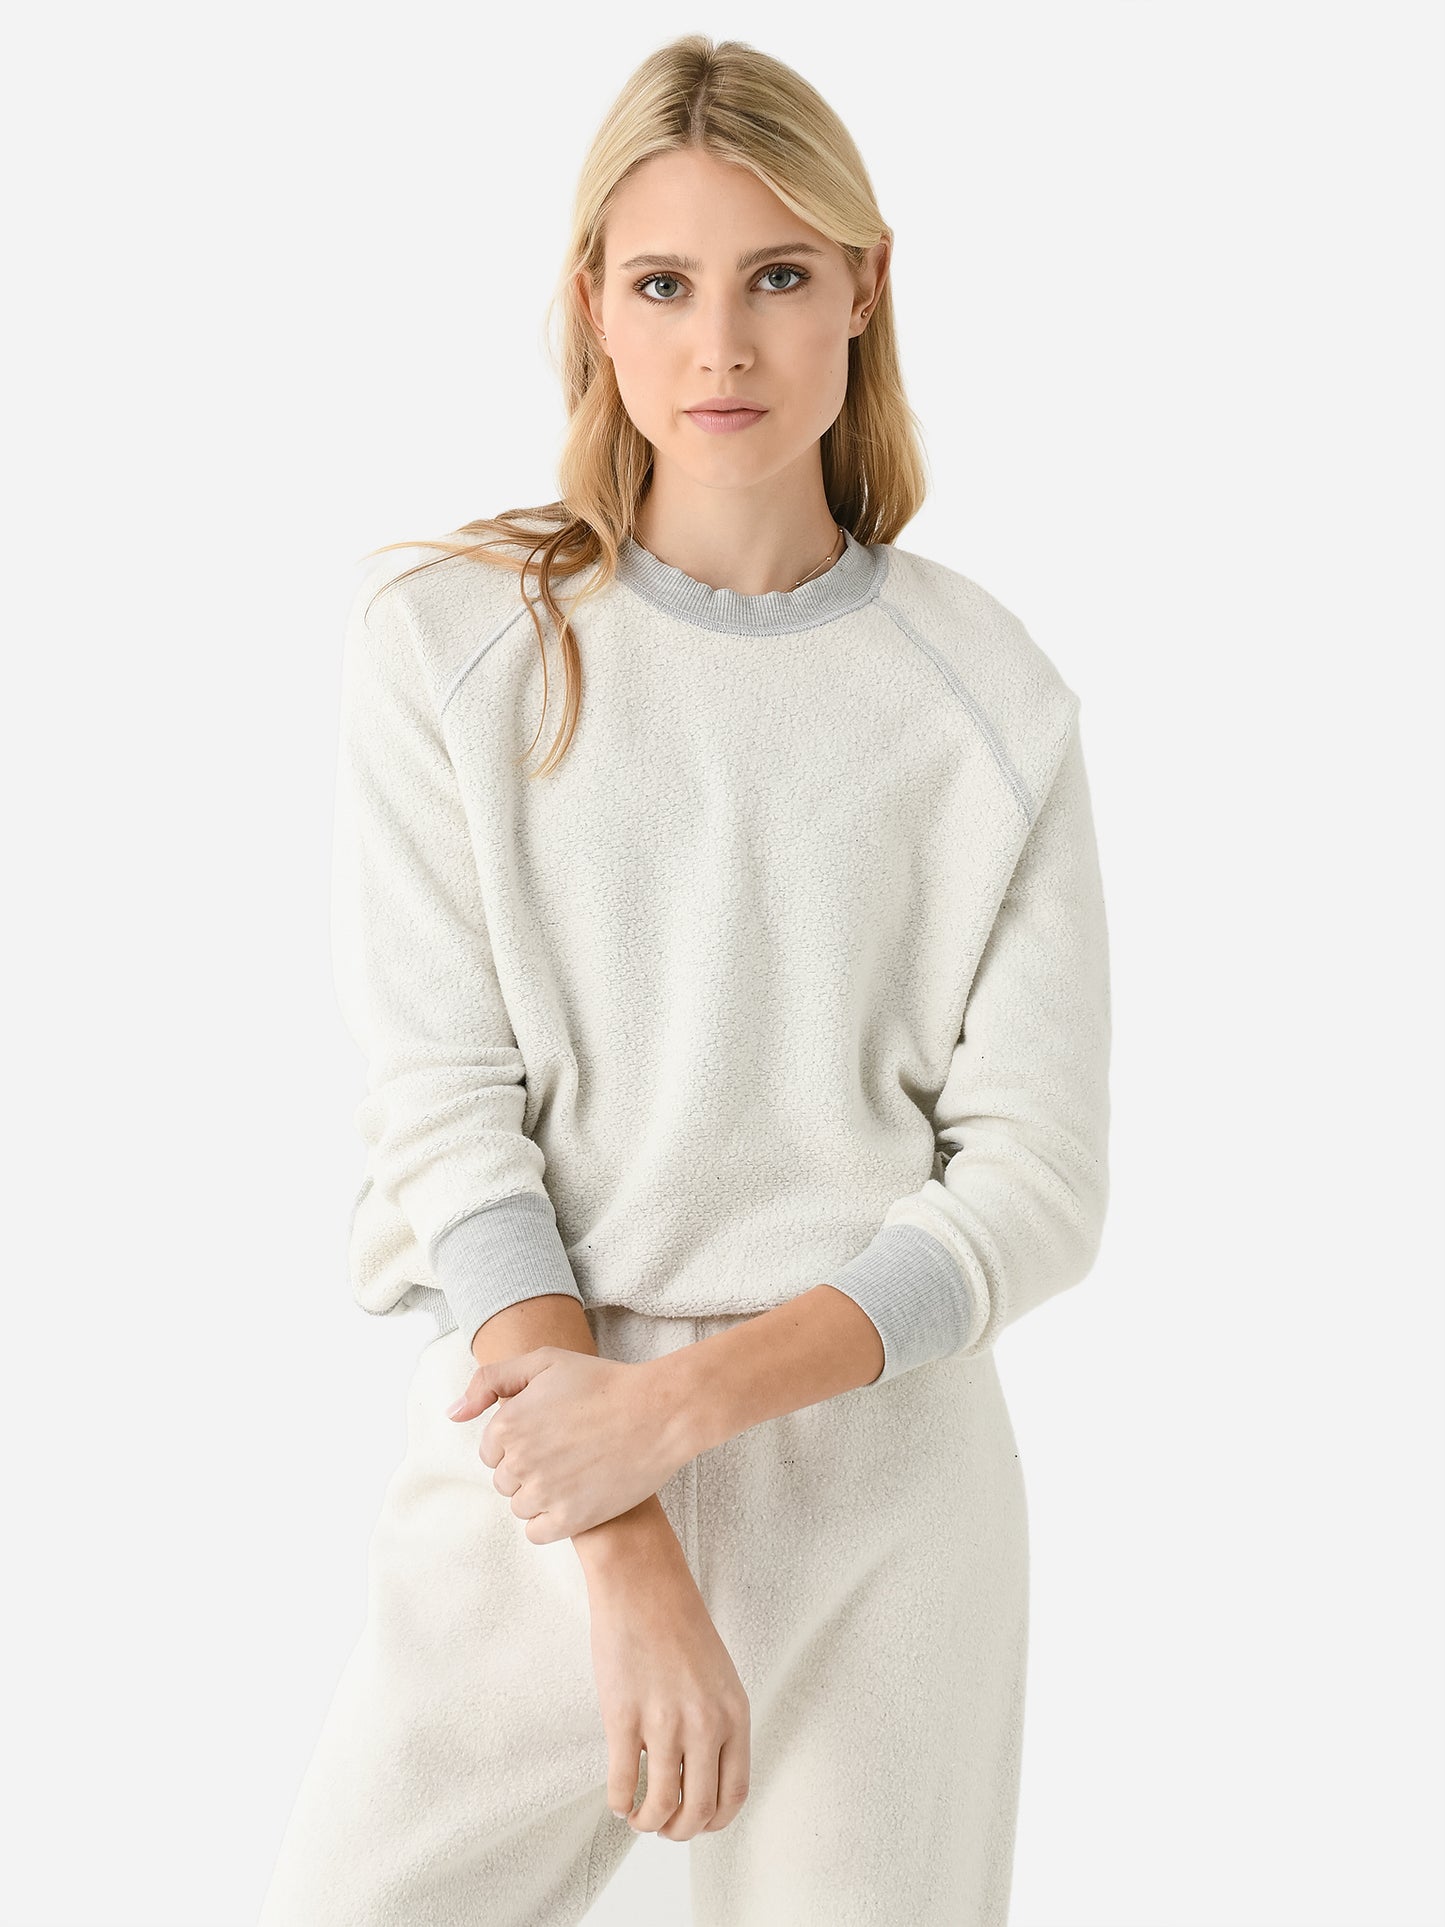 Perfect White Tee Women's Ziggy Reverse Shrunken Sweatshirt